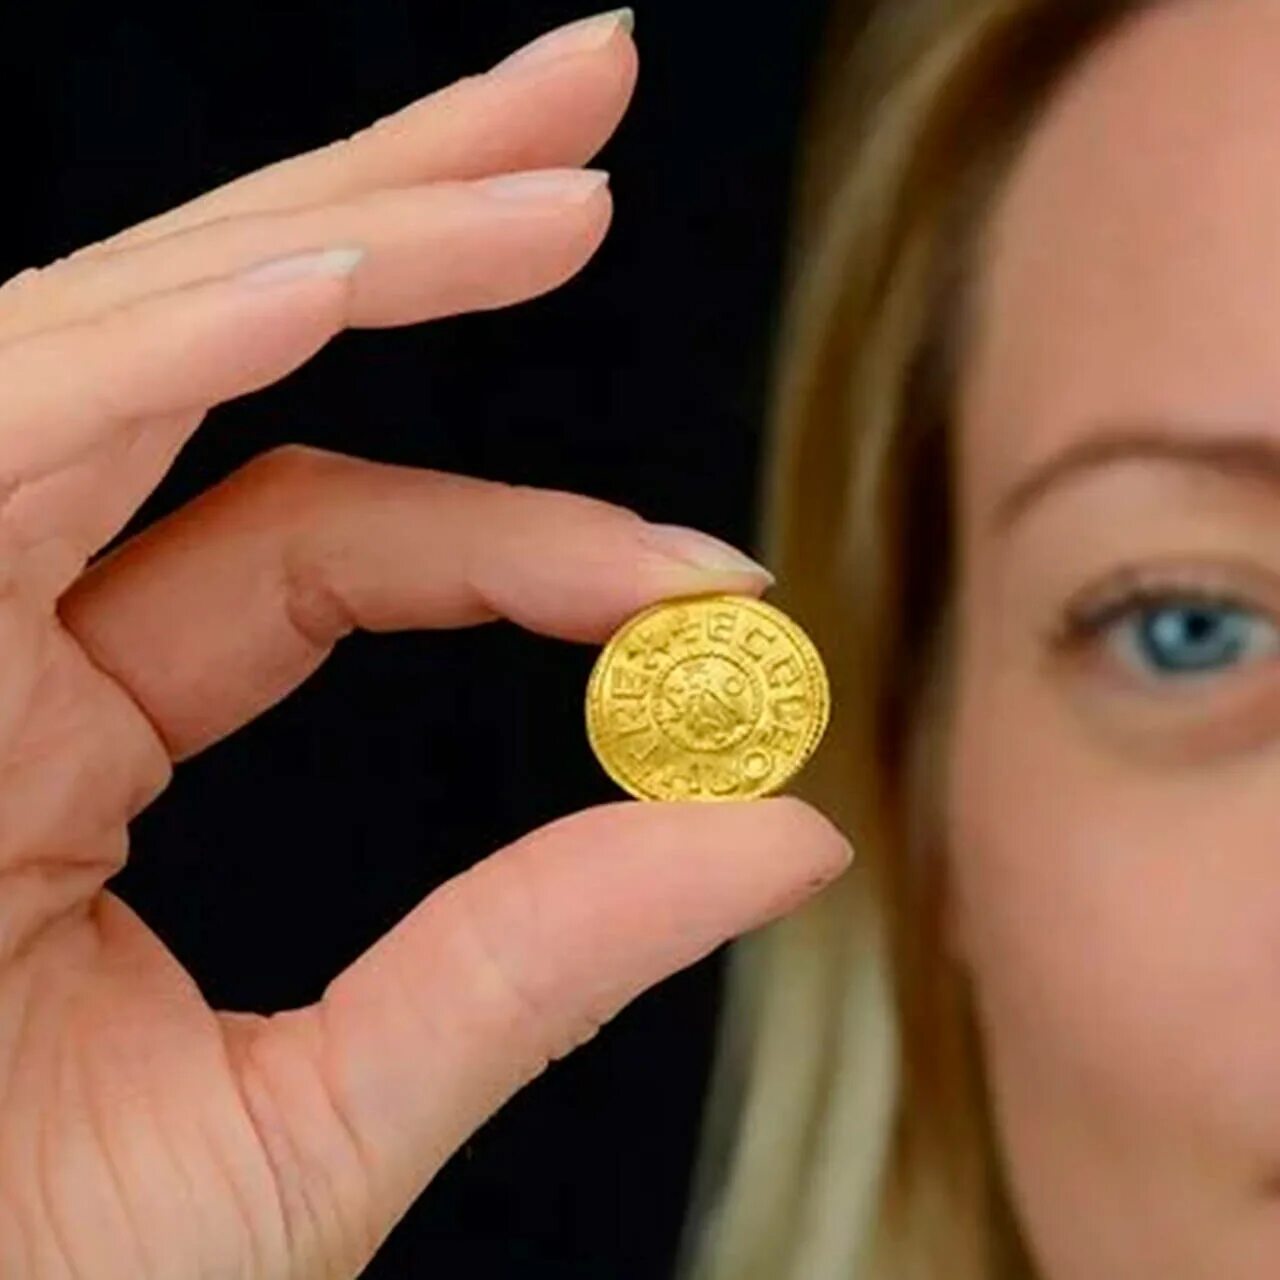 Gold-Mona. 20 Миллионов. Монета на которой написано 1000000 в руке. 117 Million funt Sterling won. 20 стерлингов в рублях